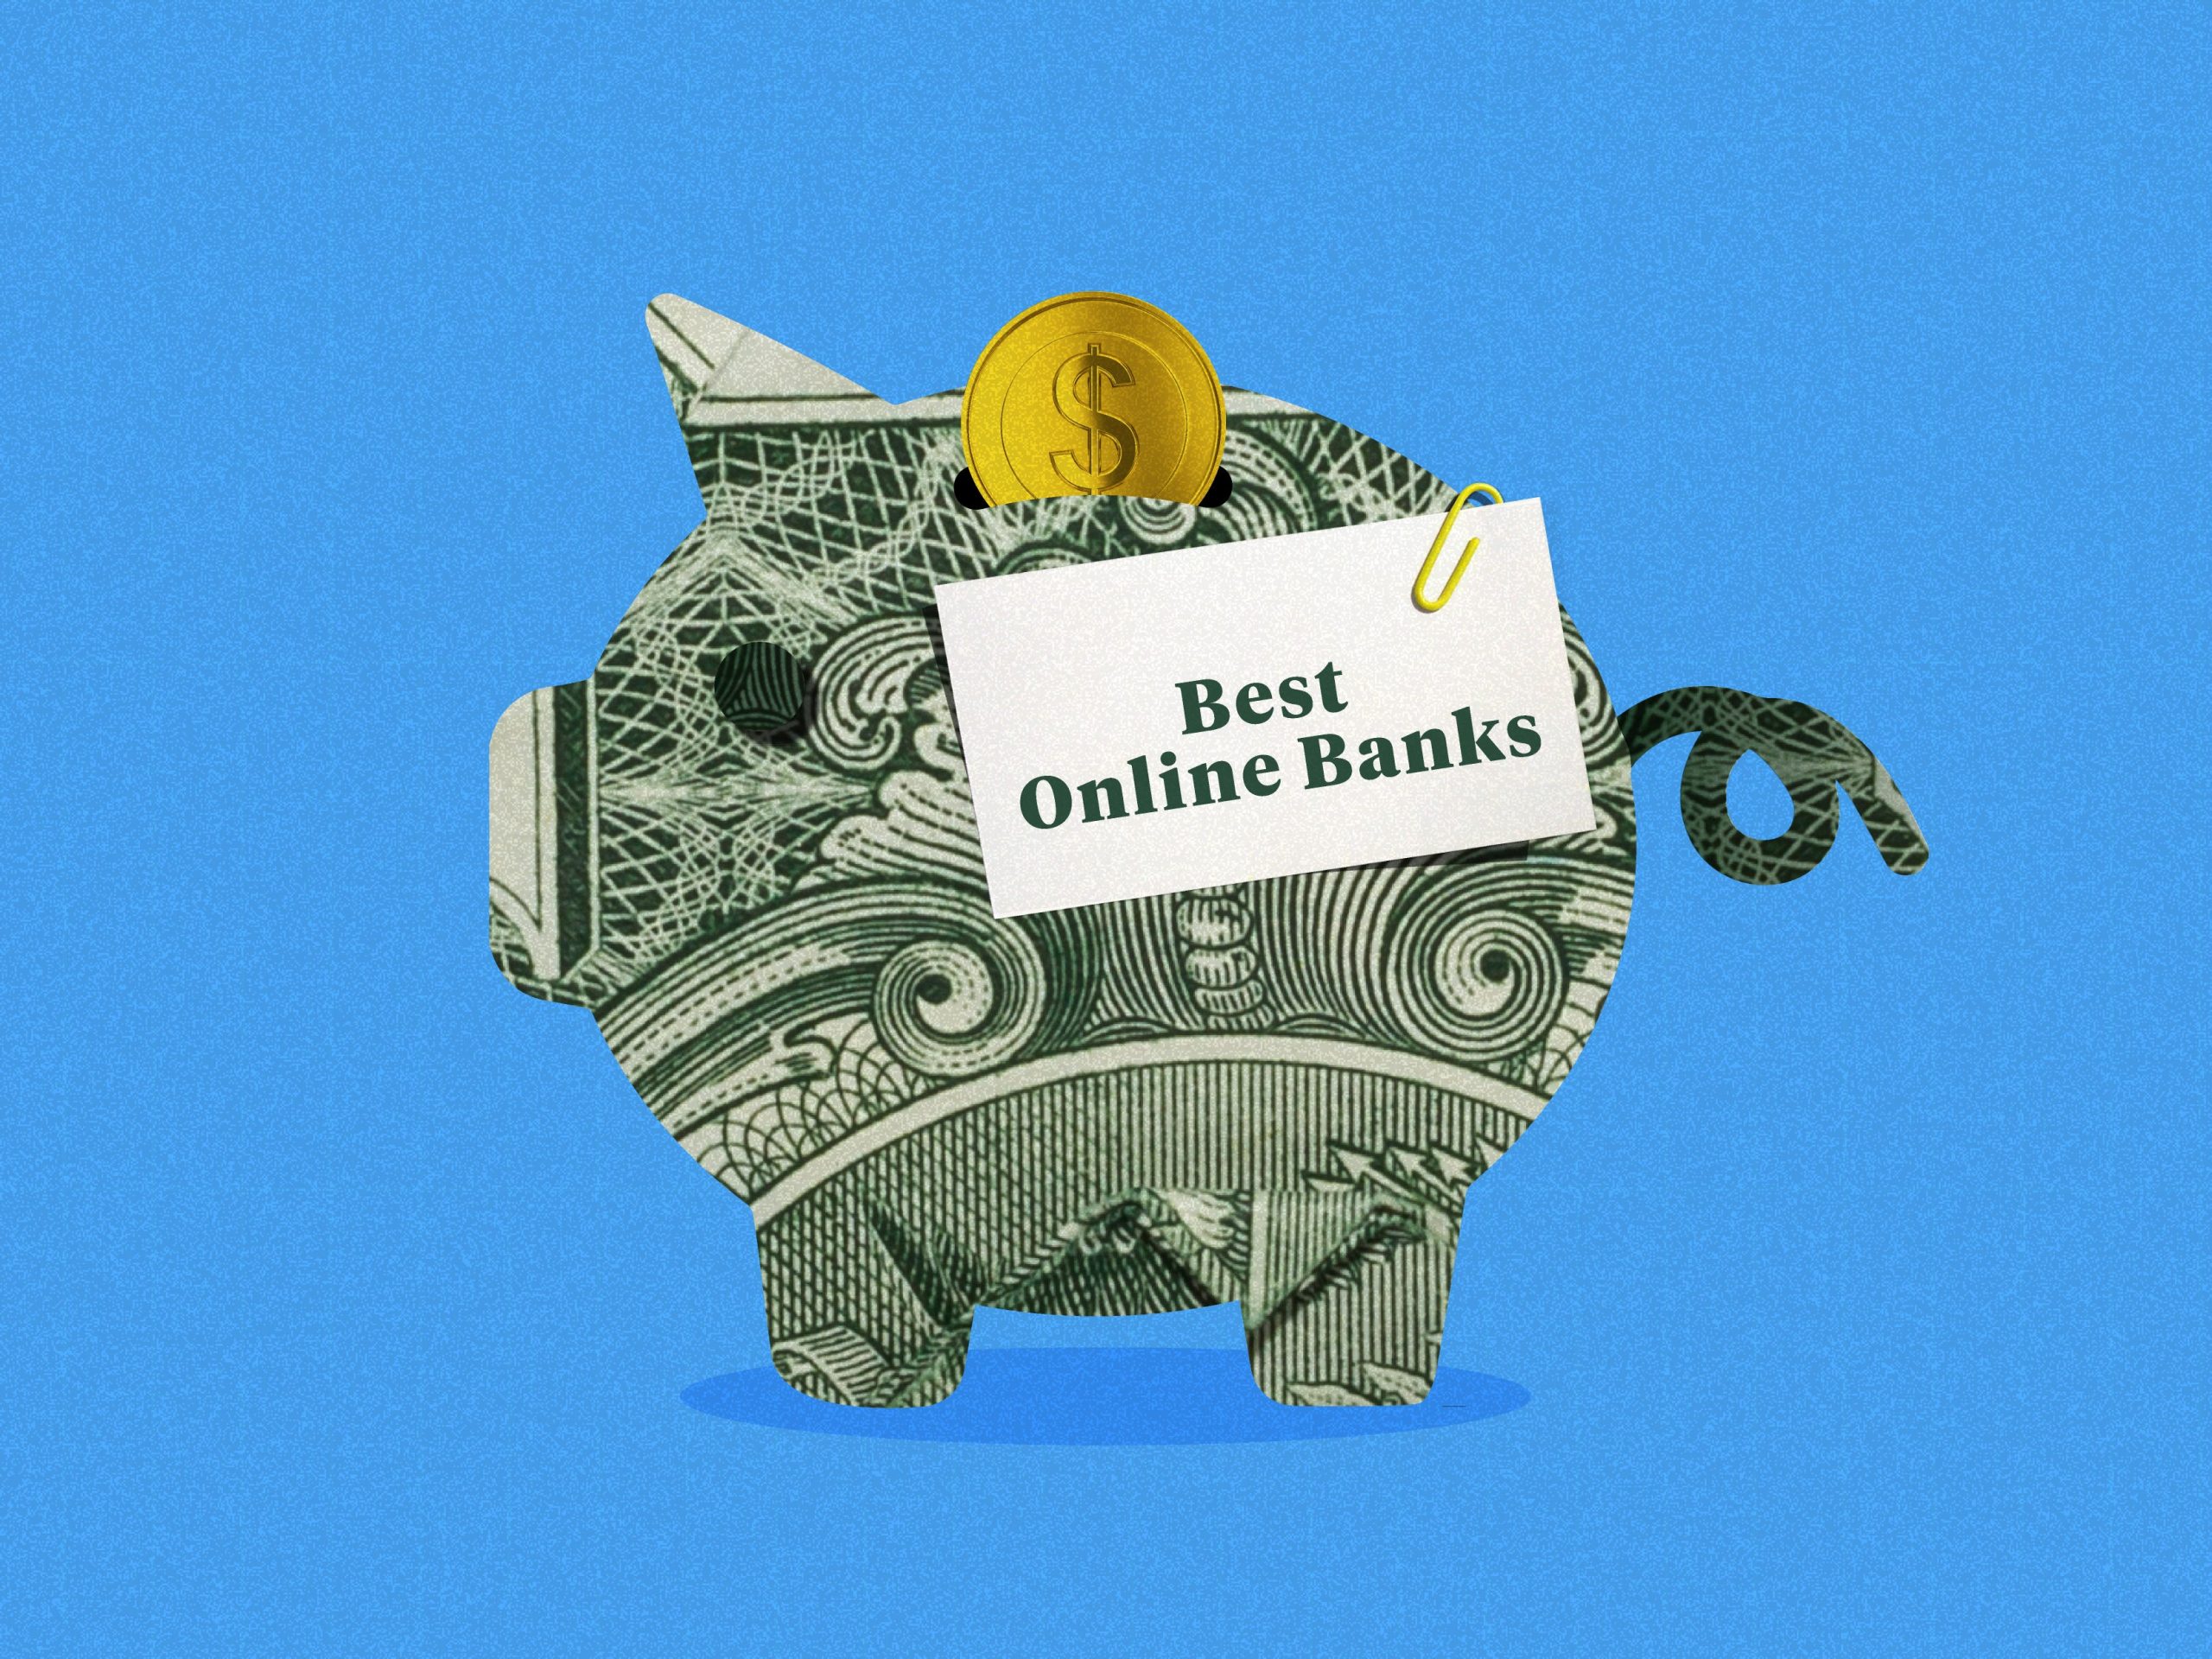 Best Online Banks 4x3